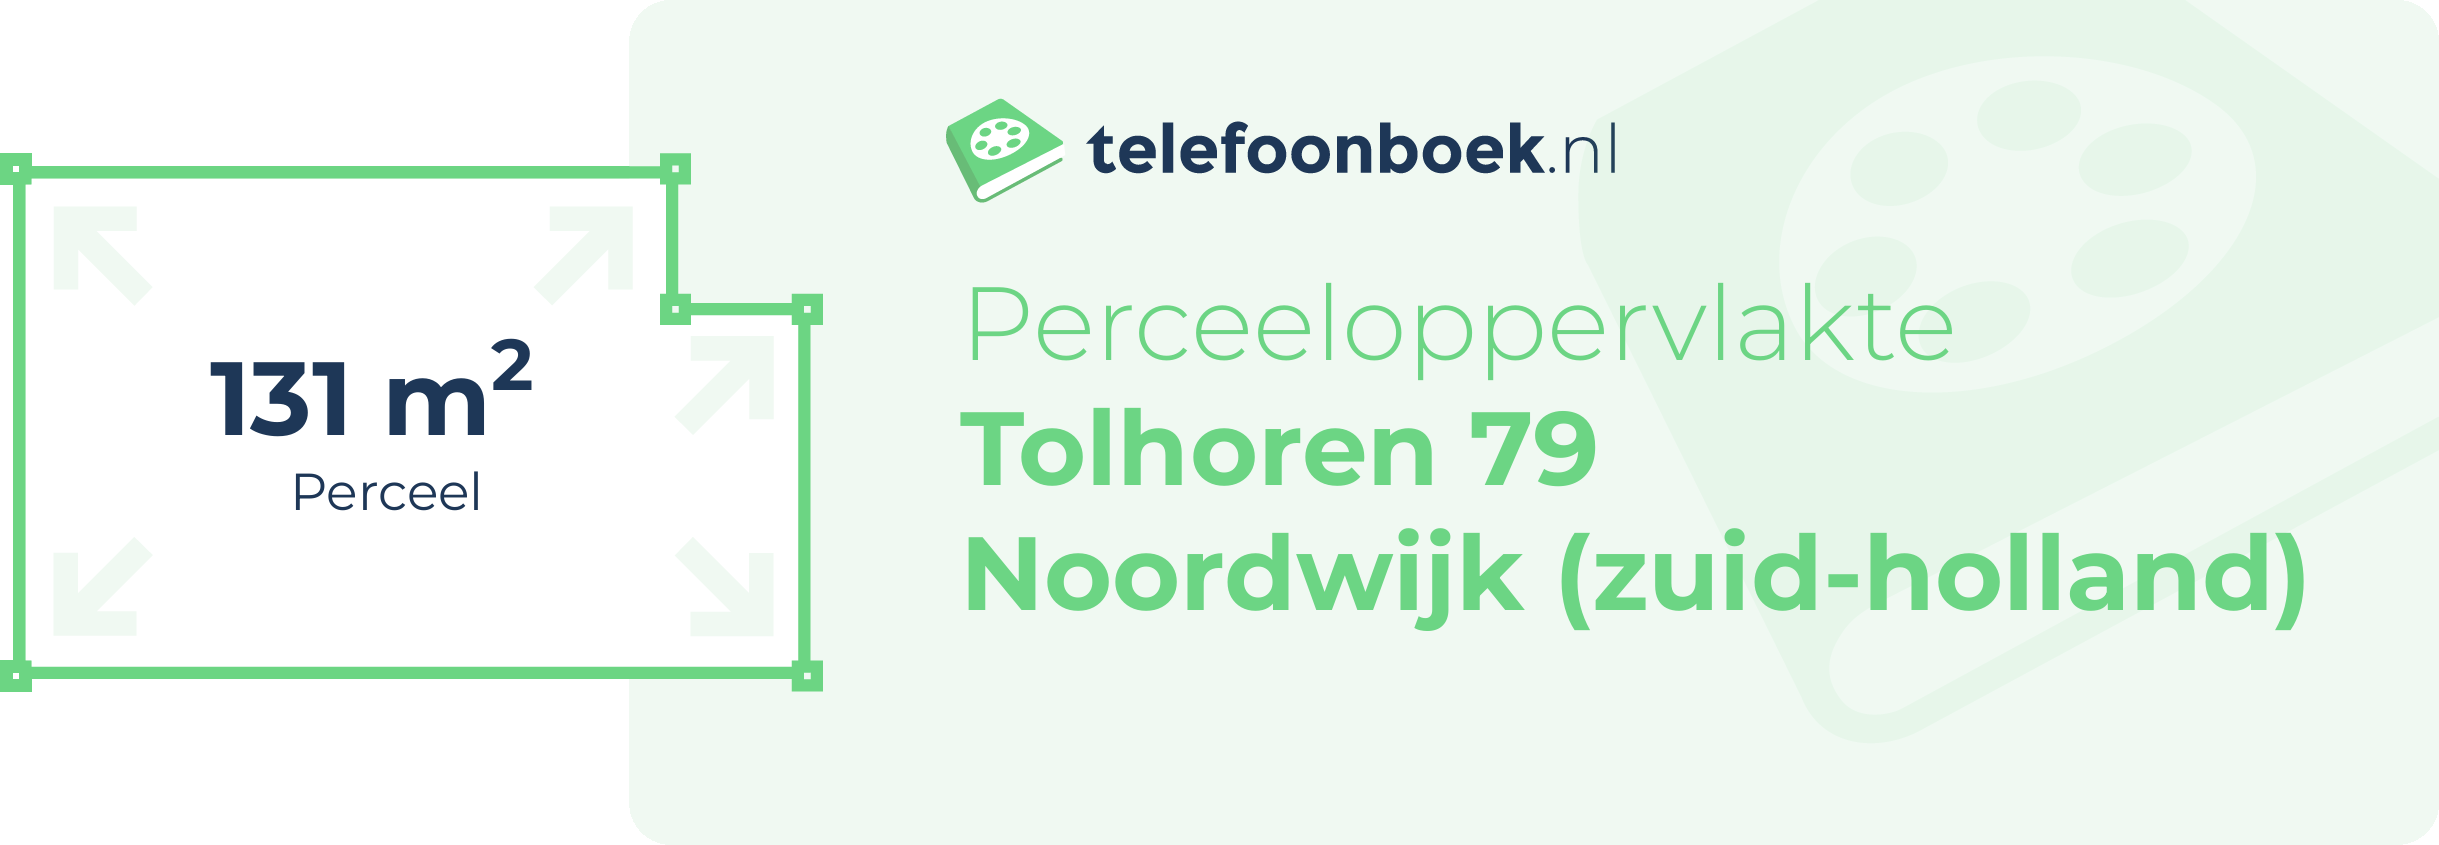 Perceeloppervlakte Tolhoren 79 Noordwijk (Zuid-Holland)